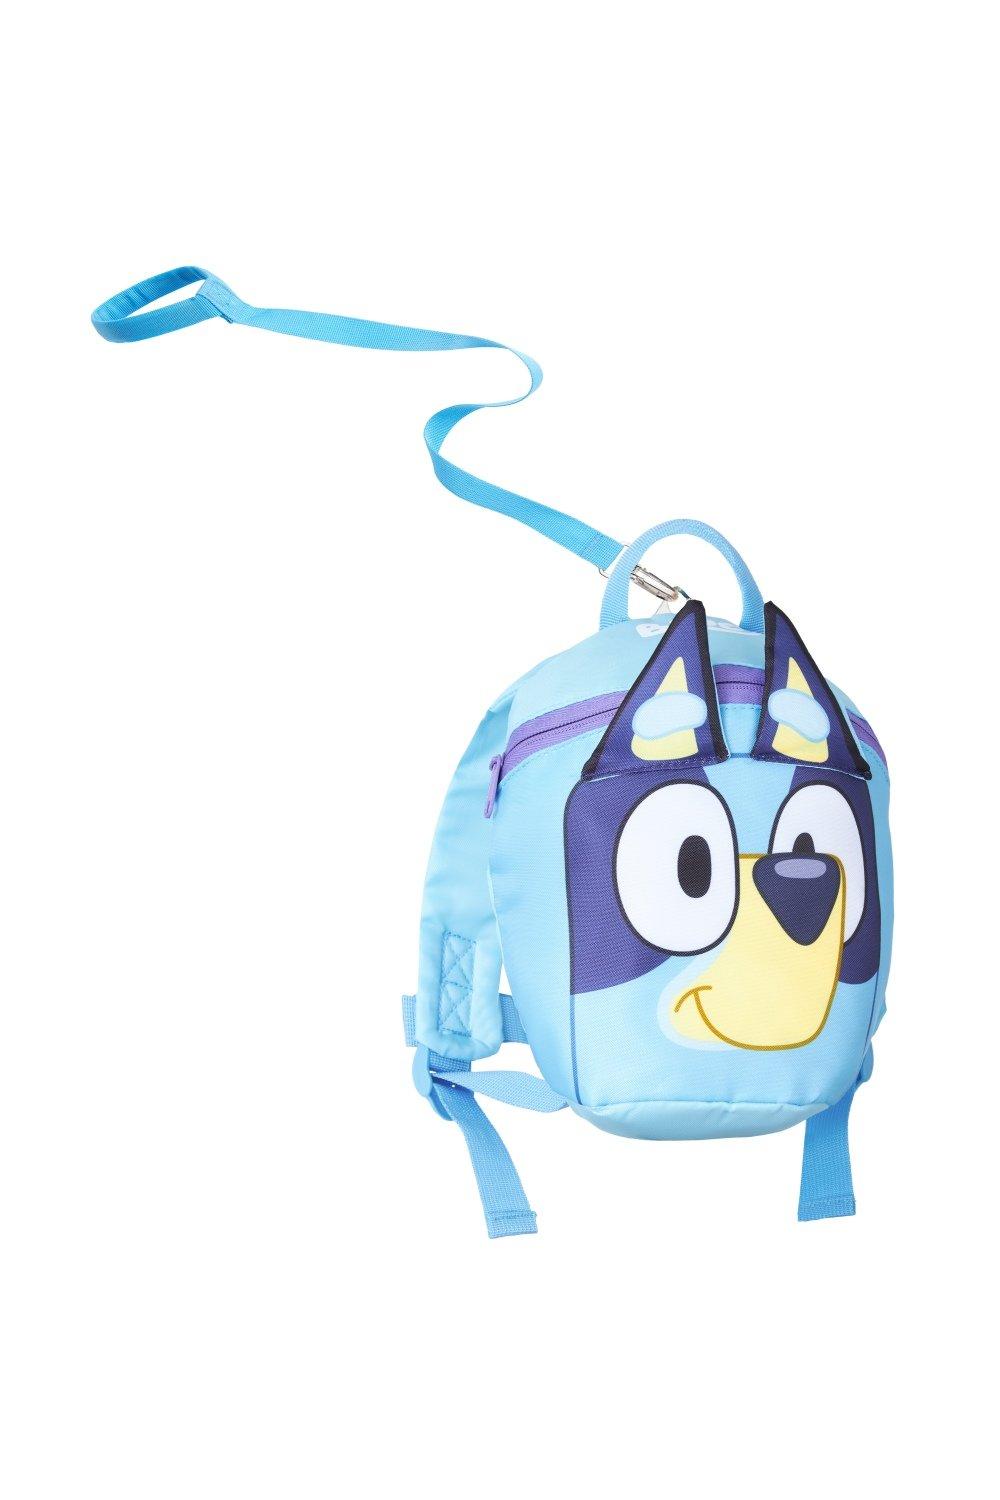 Рюкзак для малышей с поводьями Bluey, синий рюкзак подушка для безопасности малыша пчелка цвет голубой